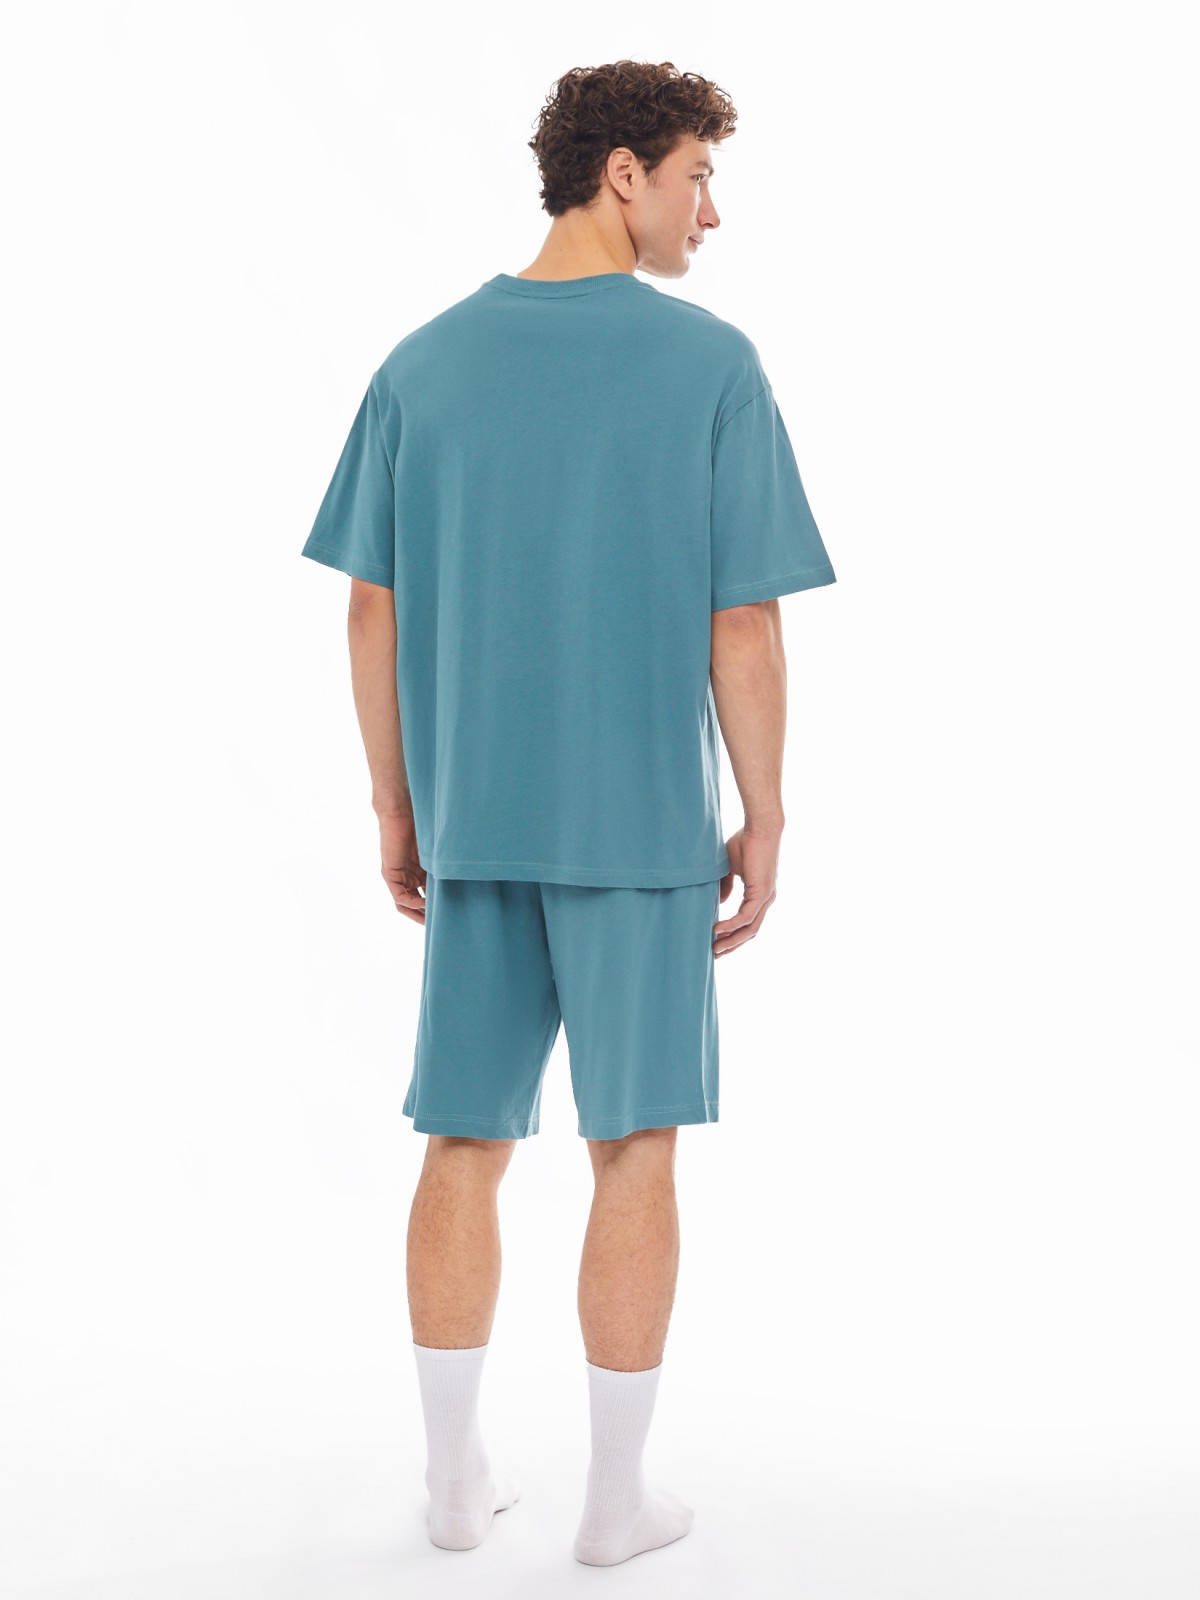 Домашний комплект из хлопка (футболка, шорты) zolla 61413870W041, цвет темно-бирюзовый, размер S - фото 4